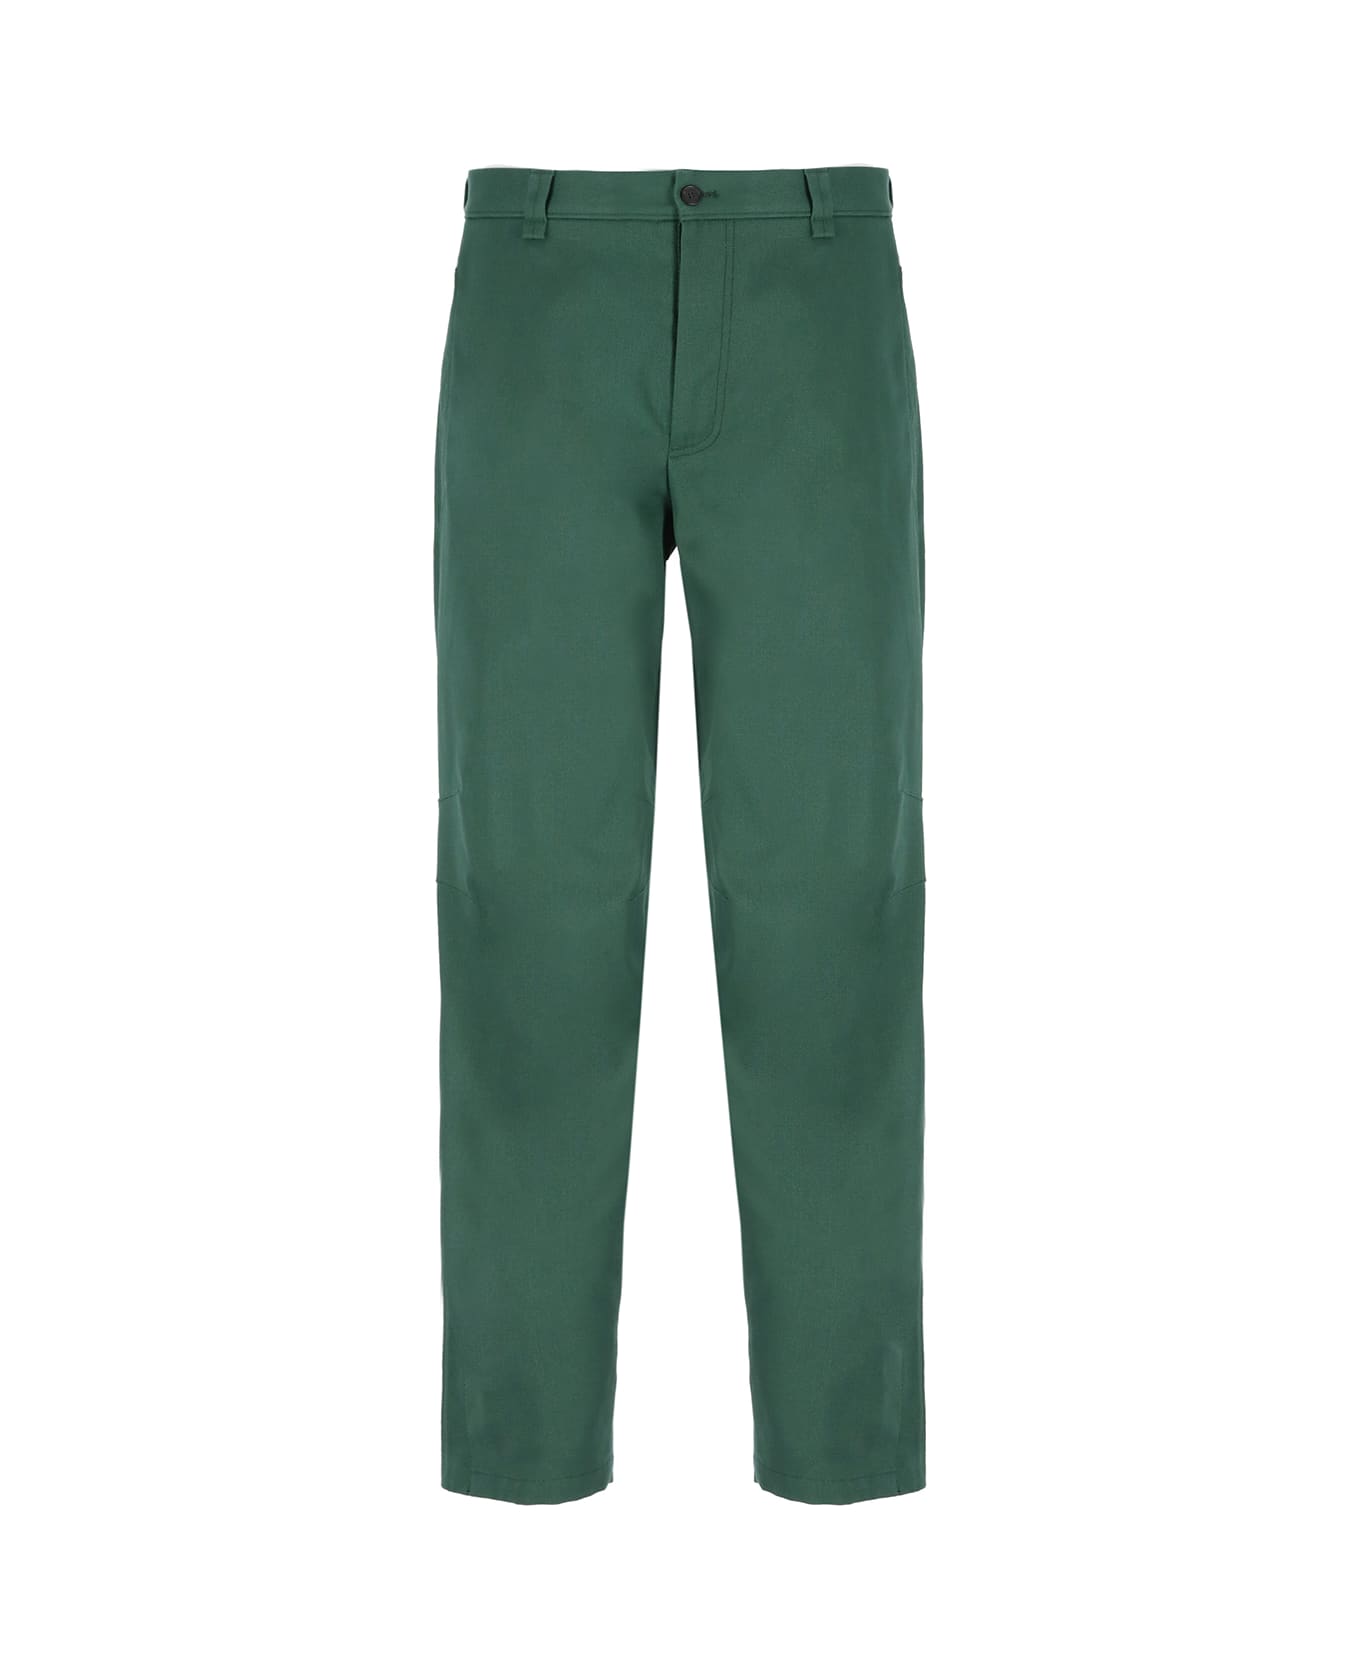 Lanvin Cotton Pants - Green